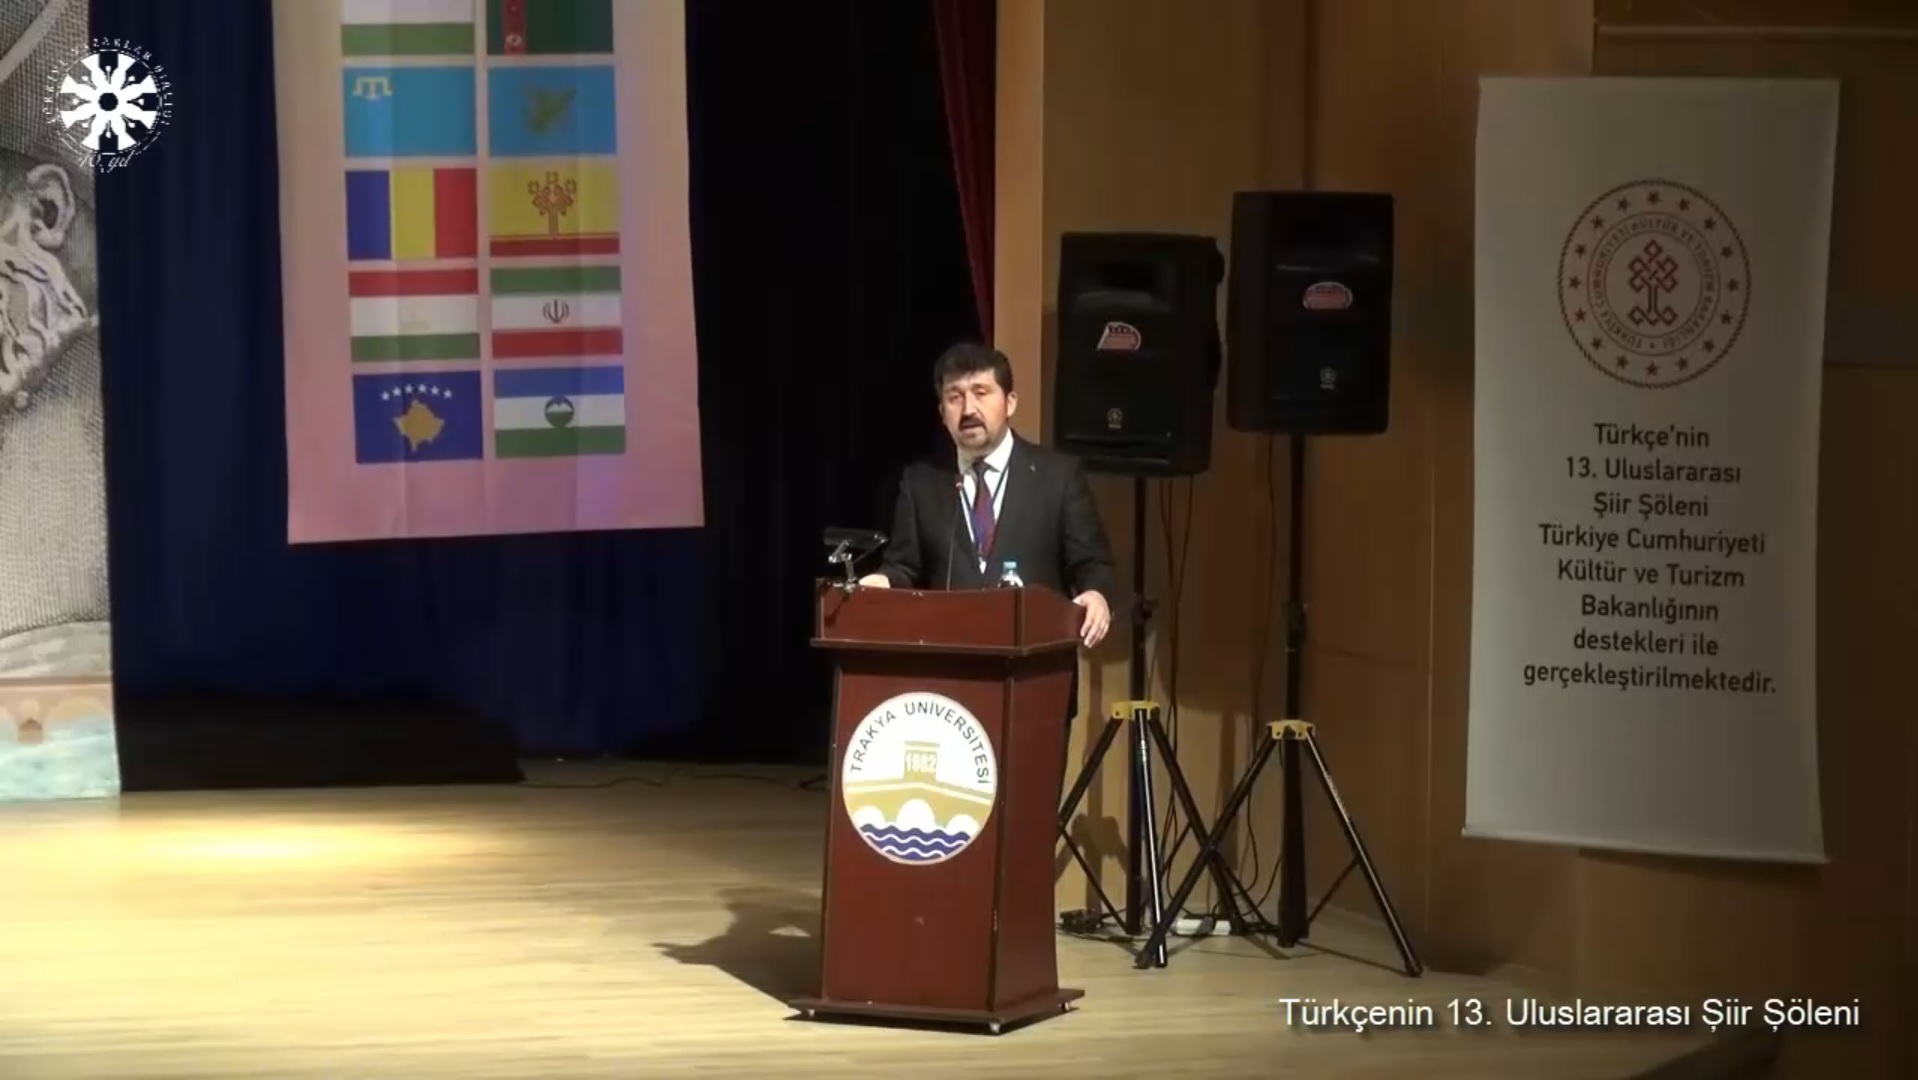 Prof. Dr. Musa Kazım Arıcan: Şair içinde bulunduğu toplumun meselelerine duyarsız kalamaz